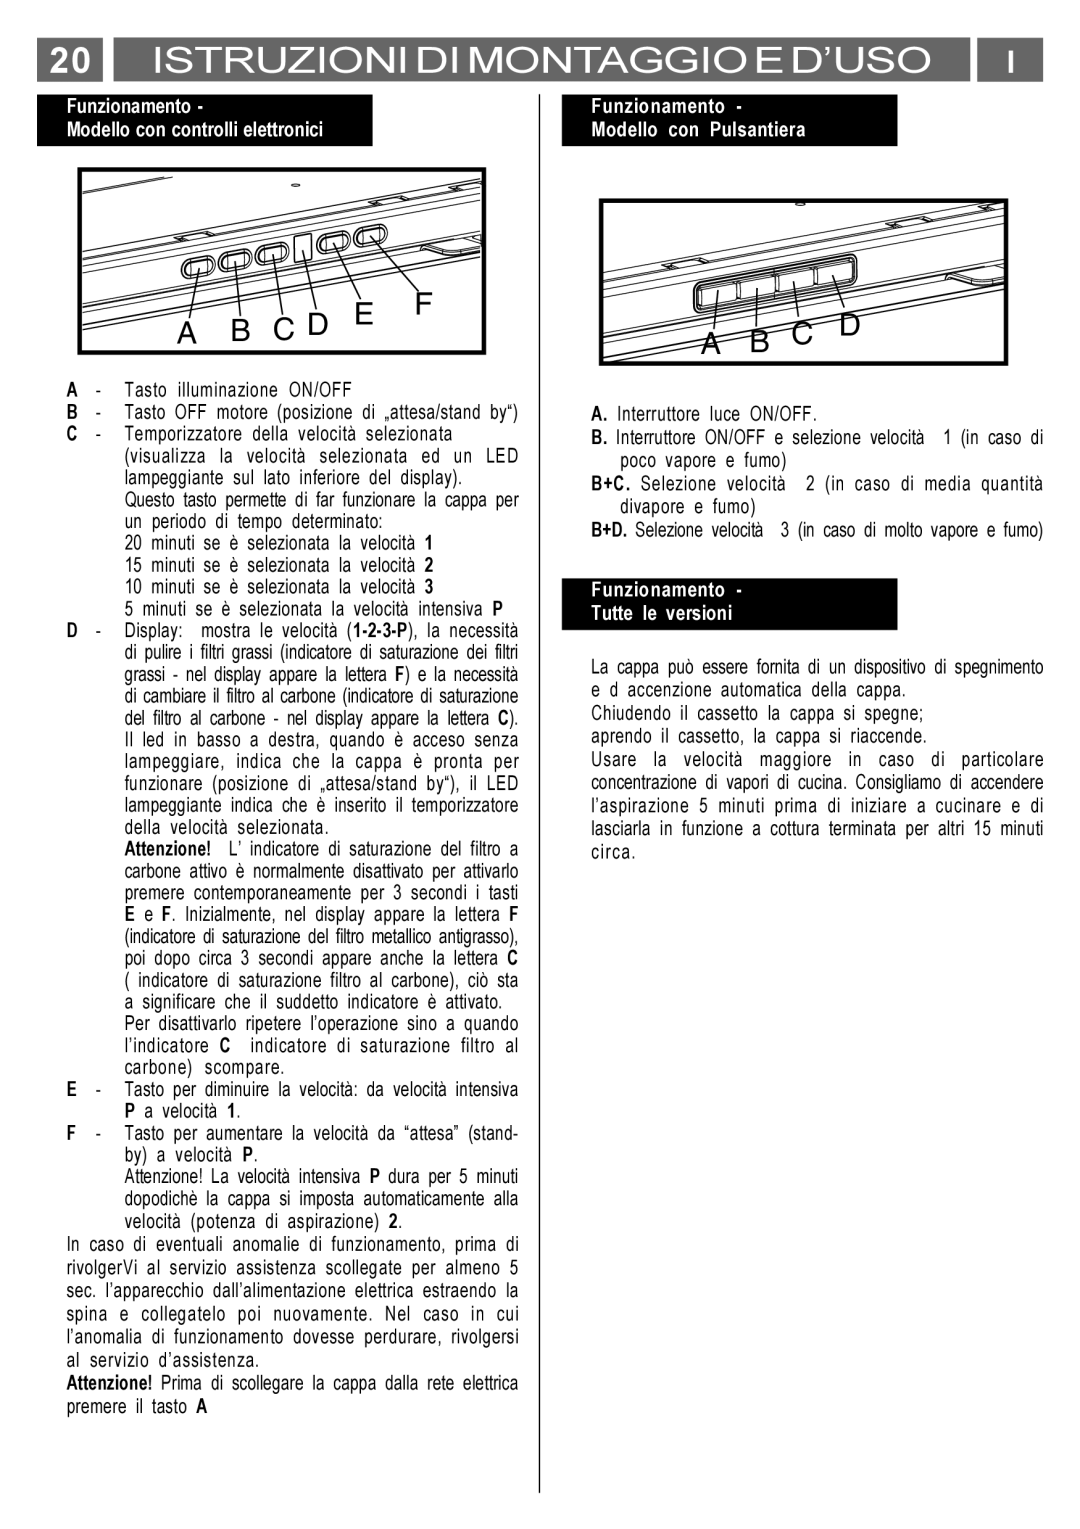 Smeg KSET650X manual Istruzioni Di Montaggio E D’Uso, A B C D, Funzionamento Modello con controlli elettronici 